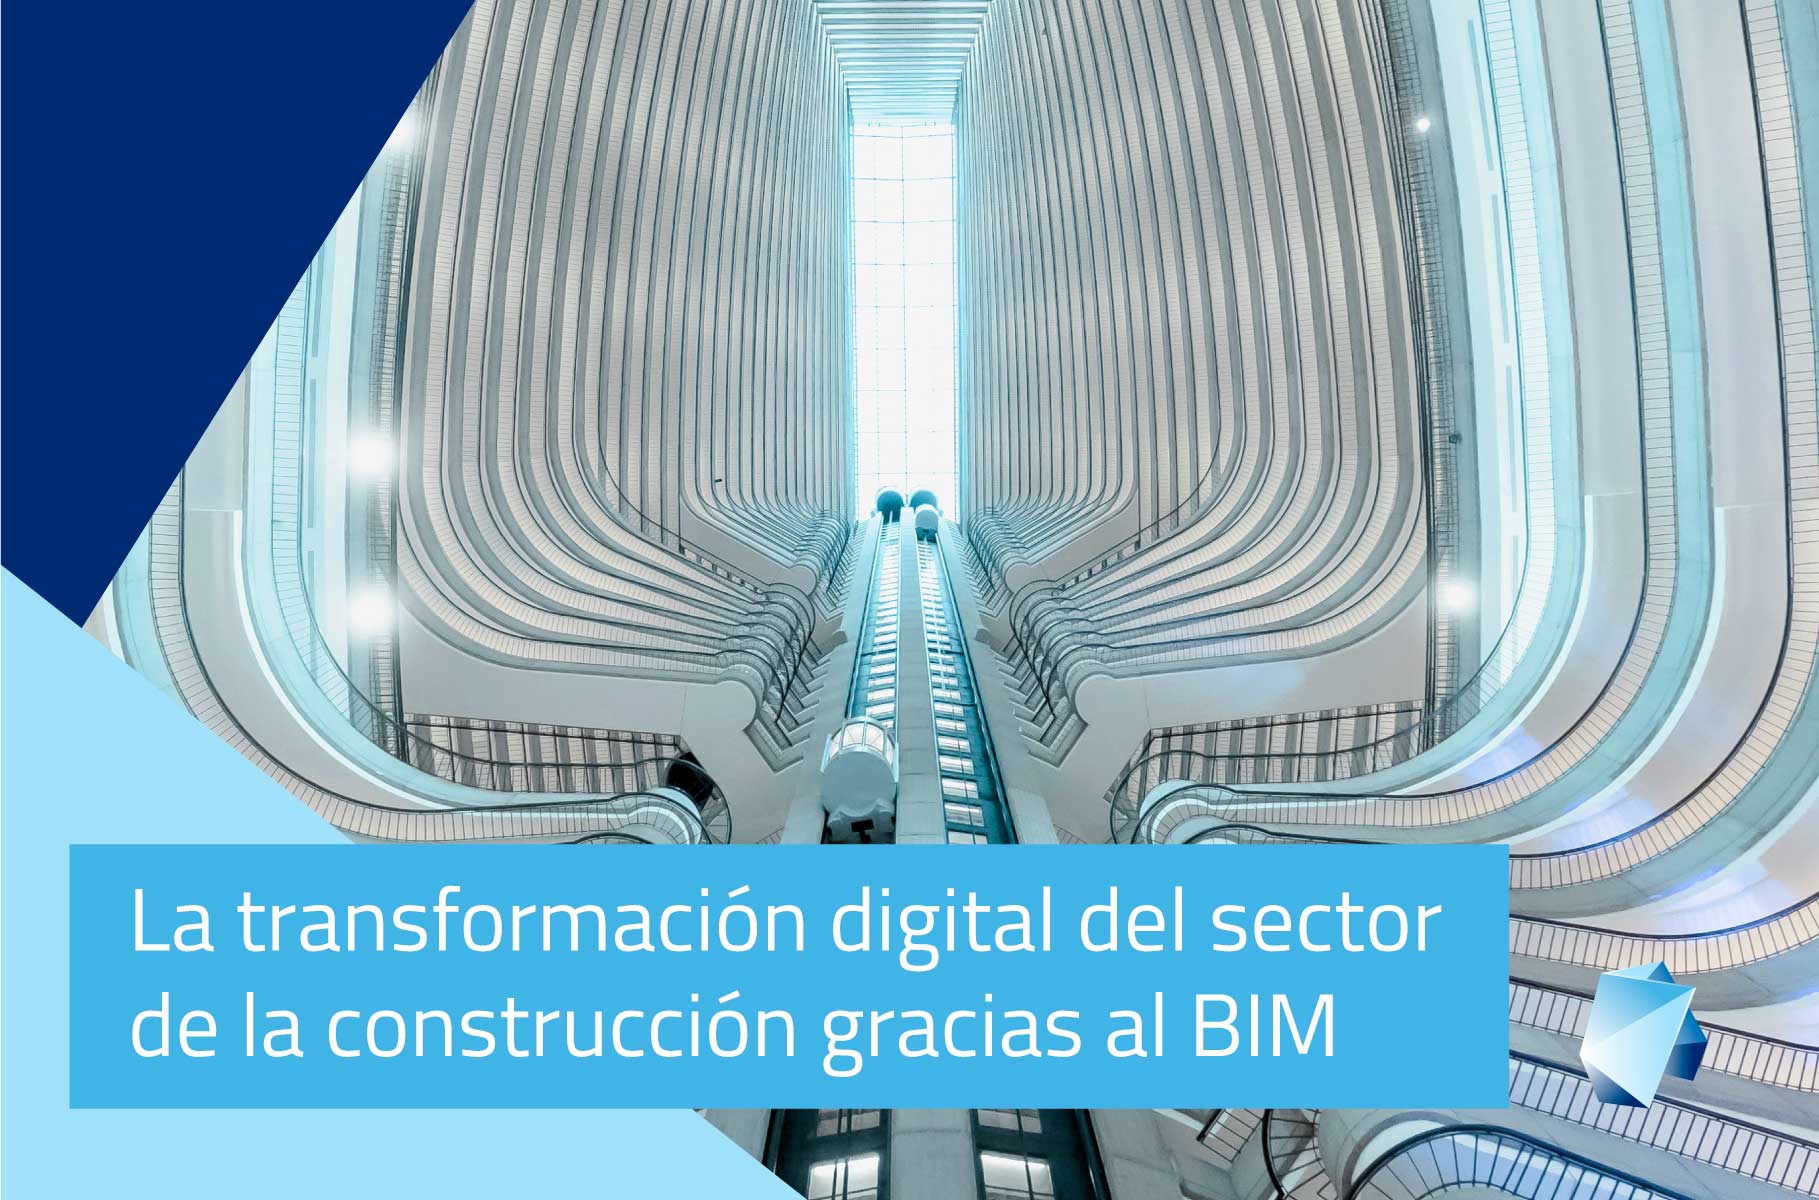 La transformación digital del sector de la construcción gracias al BIM